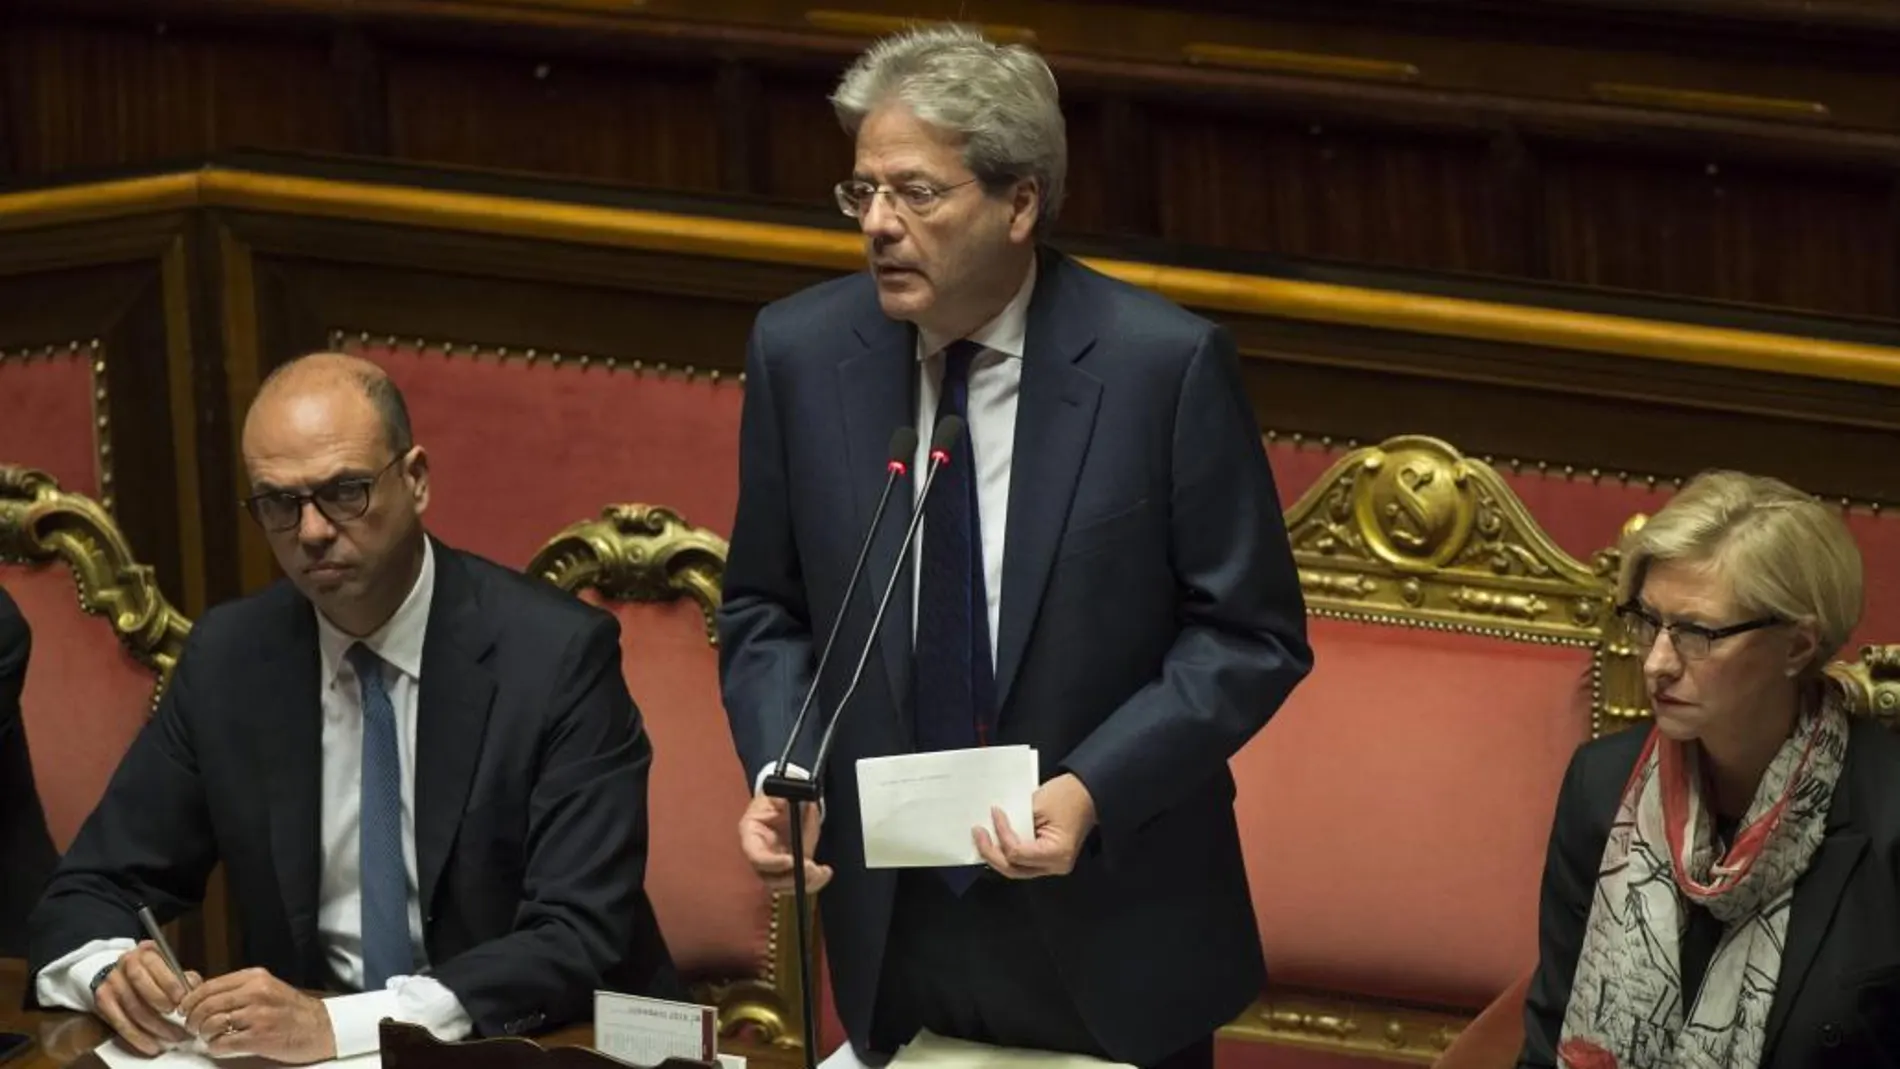 El primer ministro italiano, Paolo Gentiloni (c), toma la palabra en presencia del ministro de Asuntos Exteriores, Angelino Alfano (d), y de la ministra de Defensa, Roberta Pinotti (d), en el Senado en Roma, Italia, hoy, 14 de diciembre de 2016